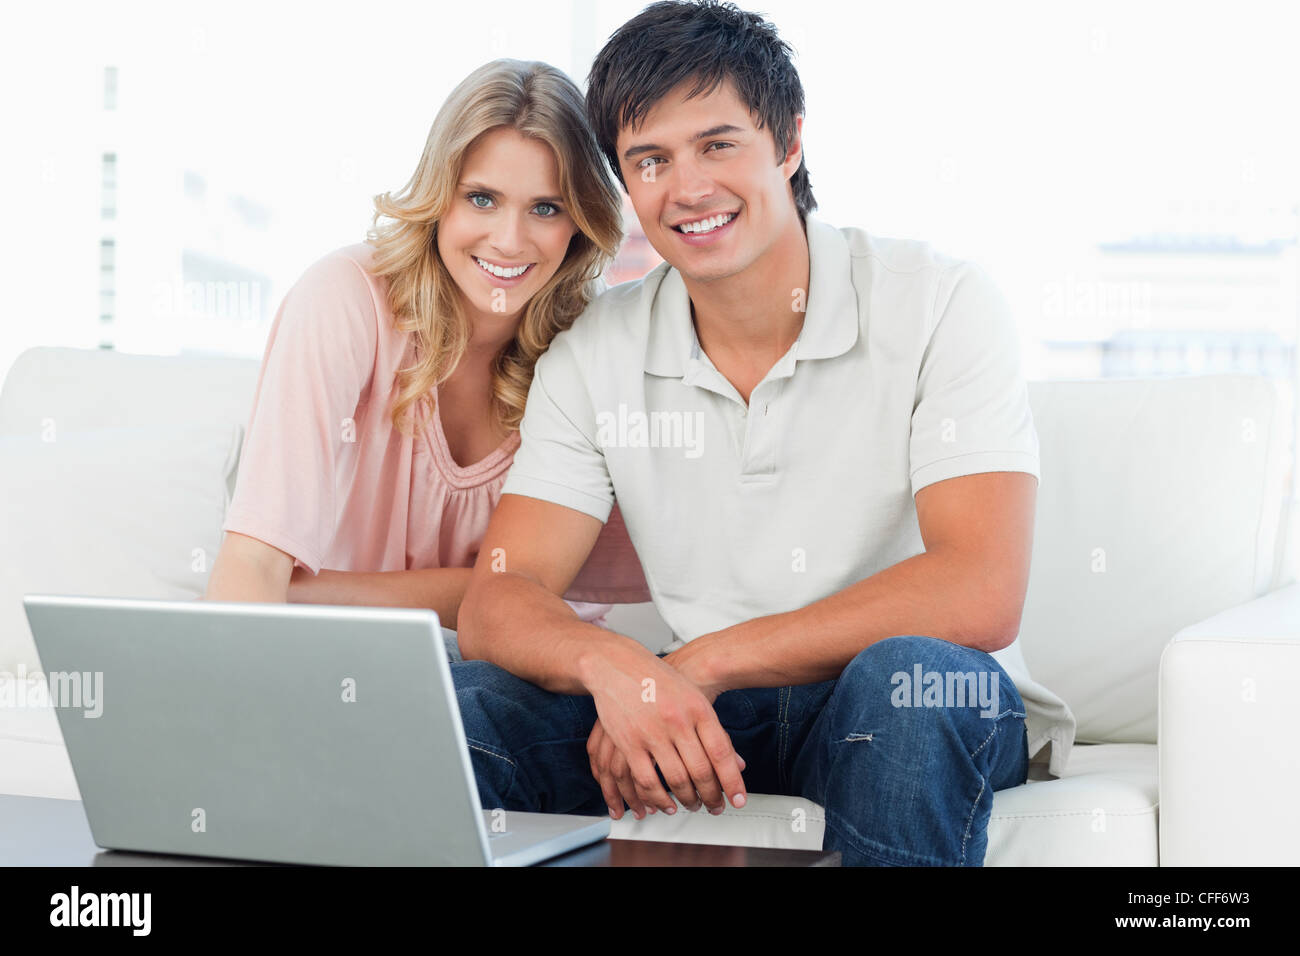 Mann und Frau sitzen nebeneinander, Lächeln, als sie geradeaus schauen Stockfoto